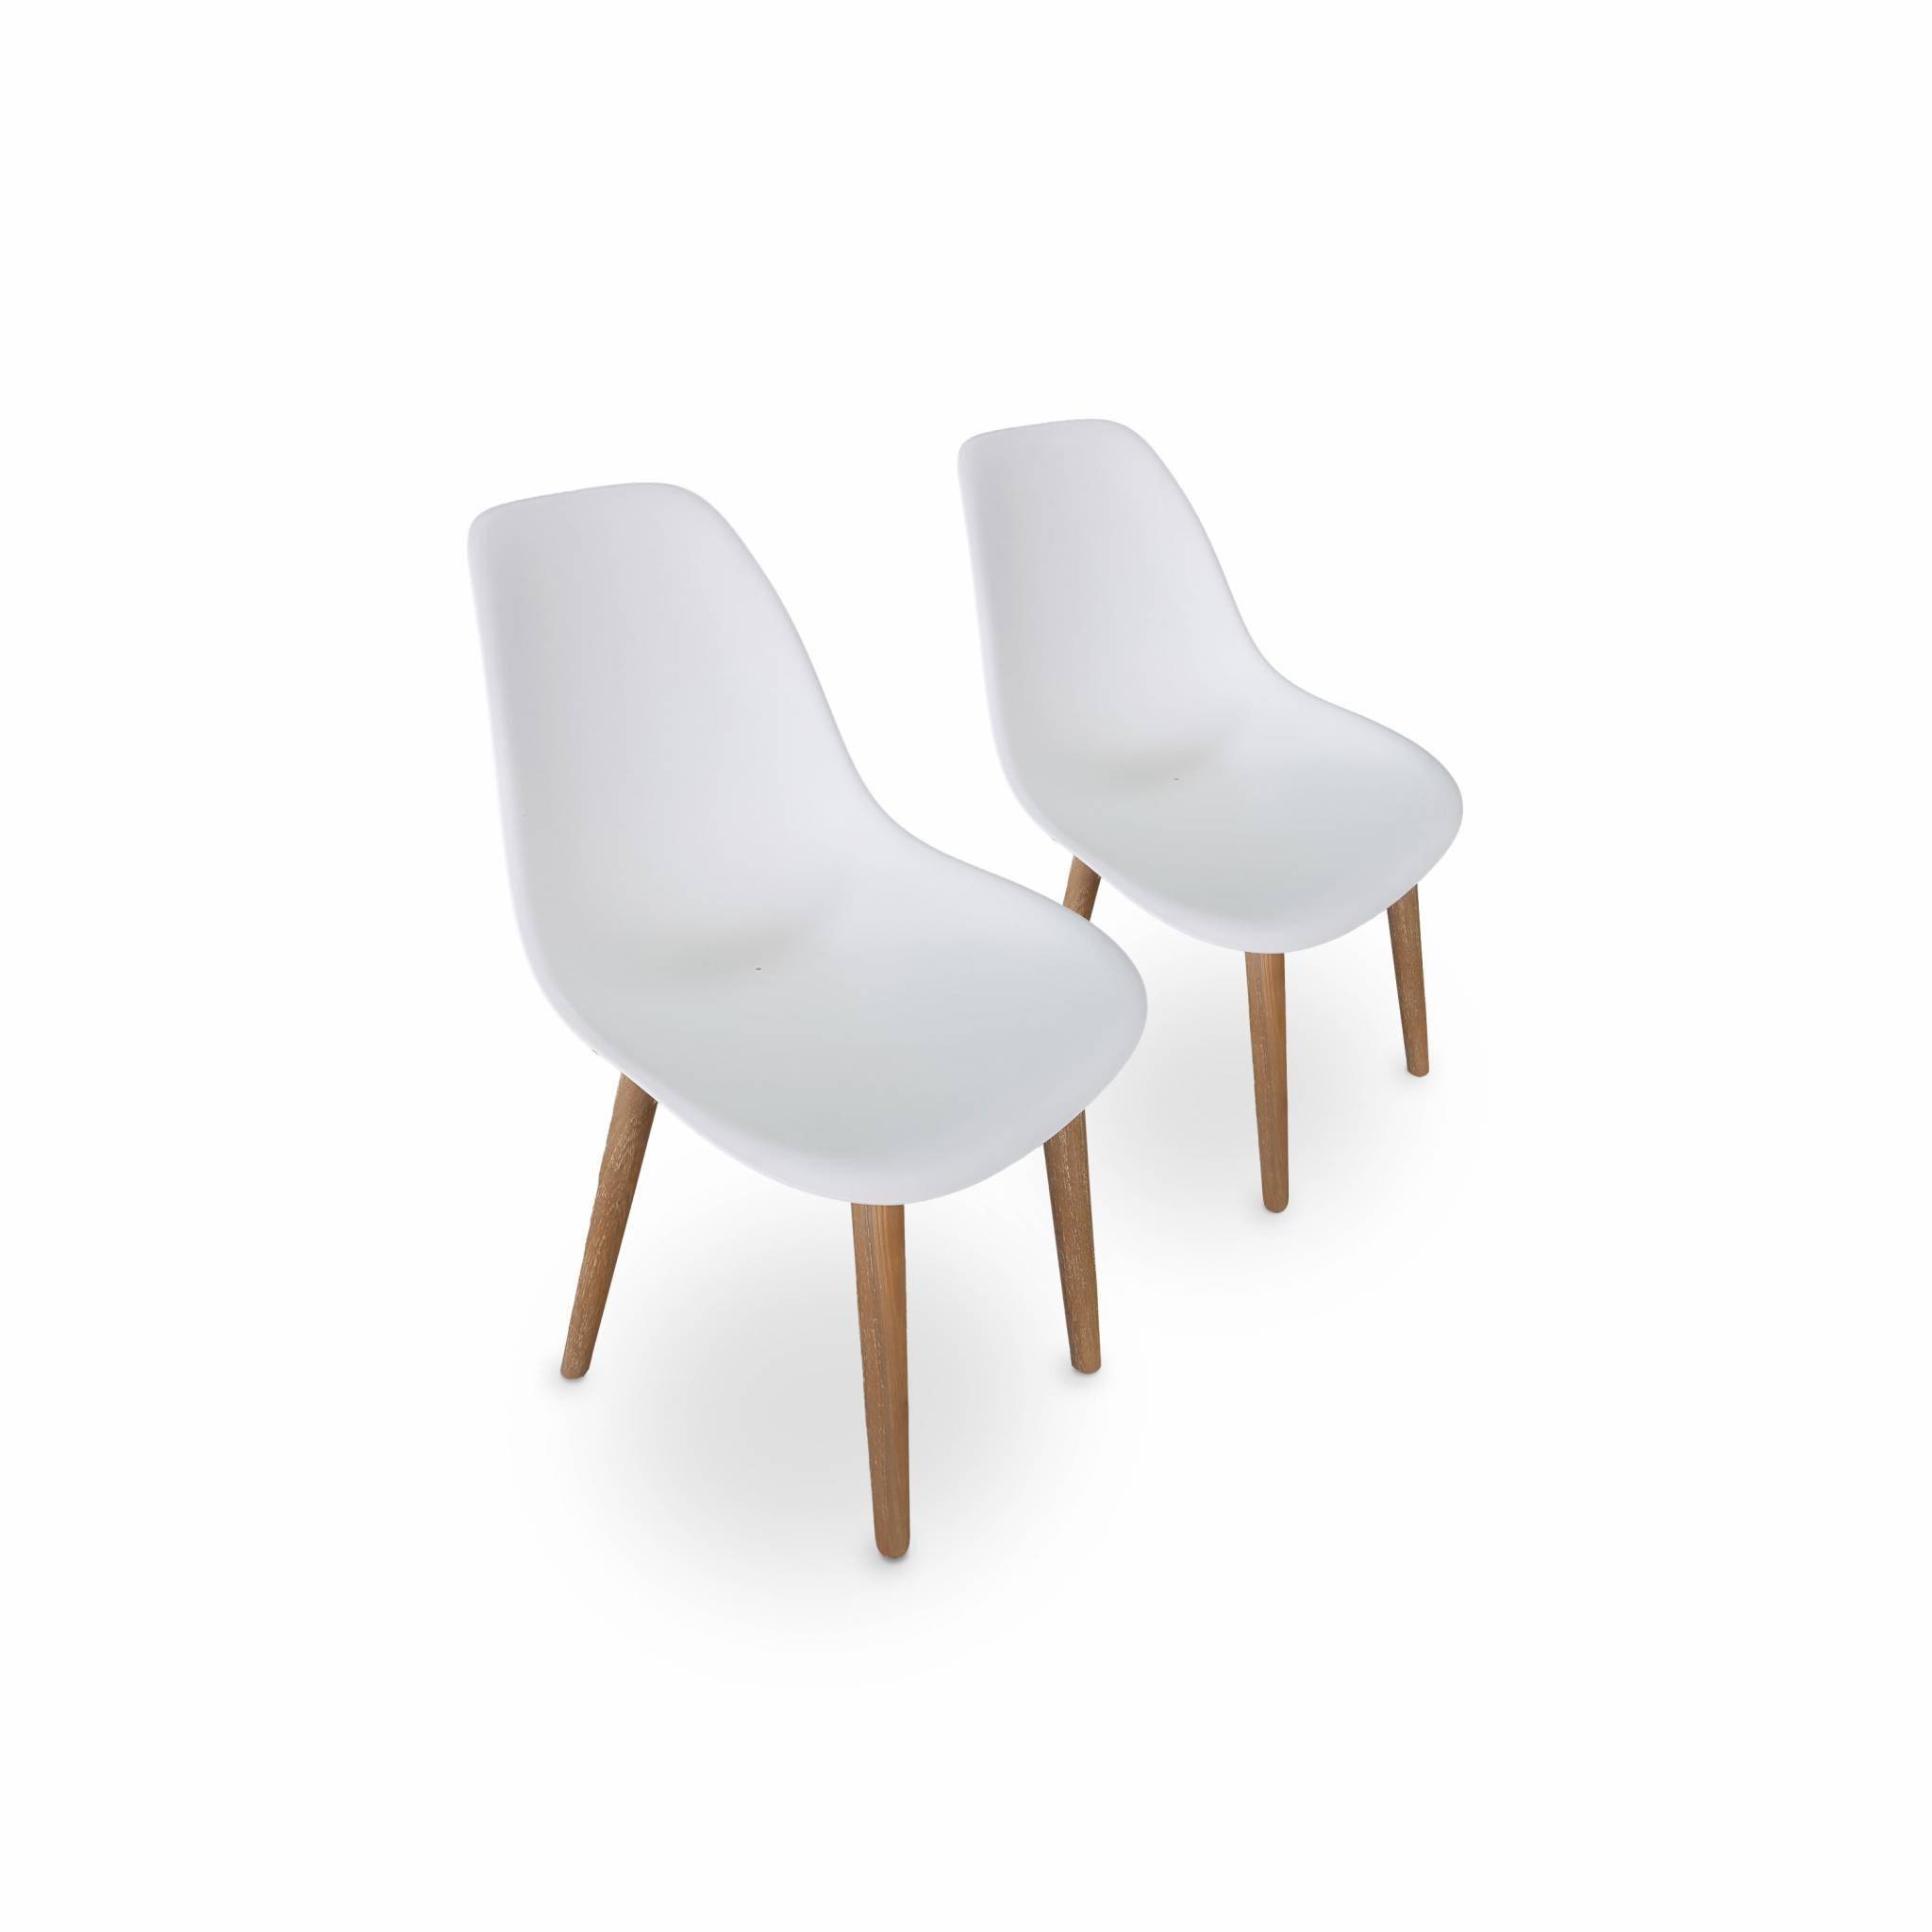 2er Set skandinavische Stühle Penida, aus Akazienholz und weißem Kunstharz gespritzt, innen/außen Photo1